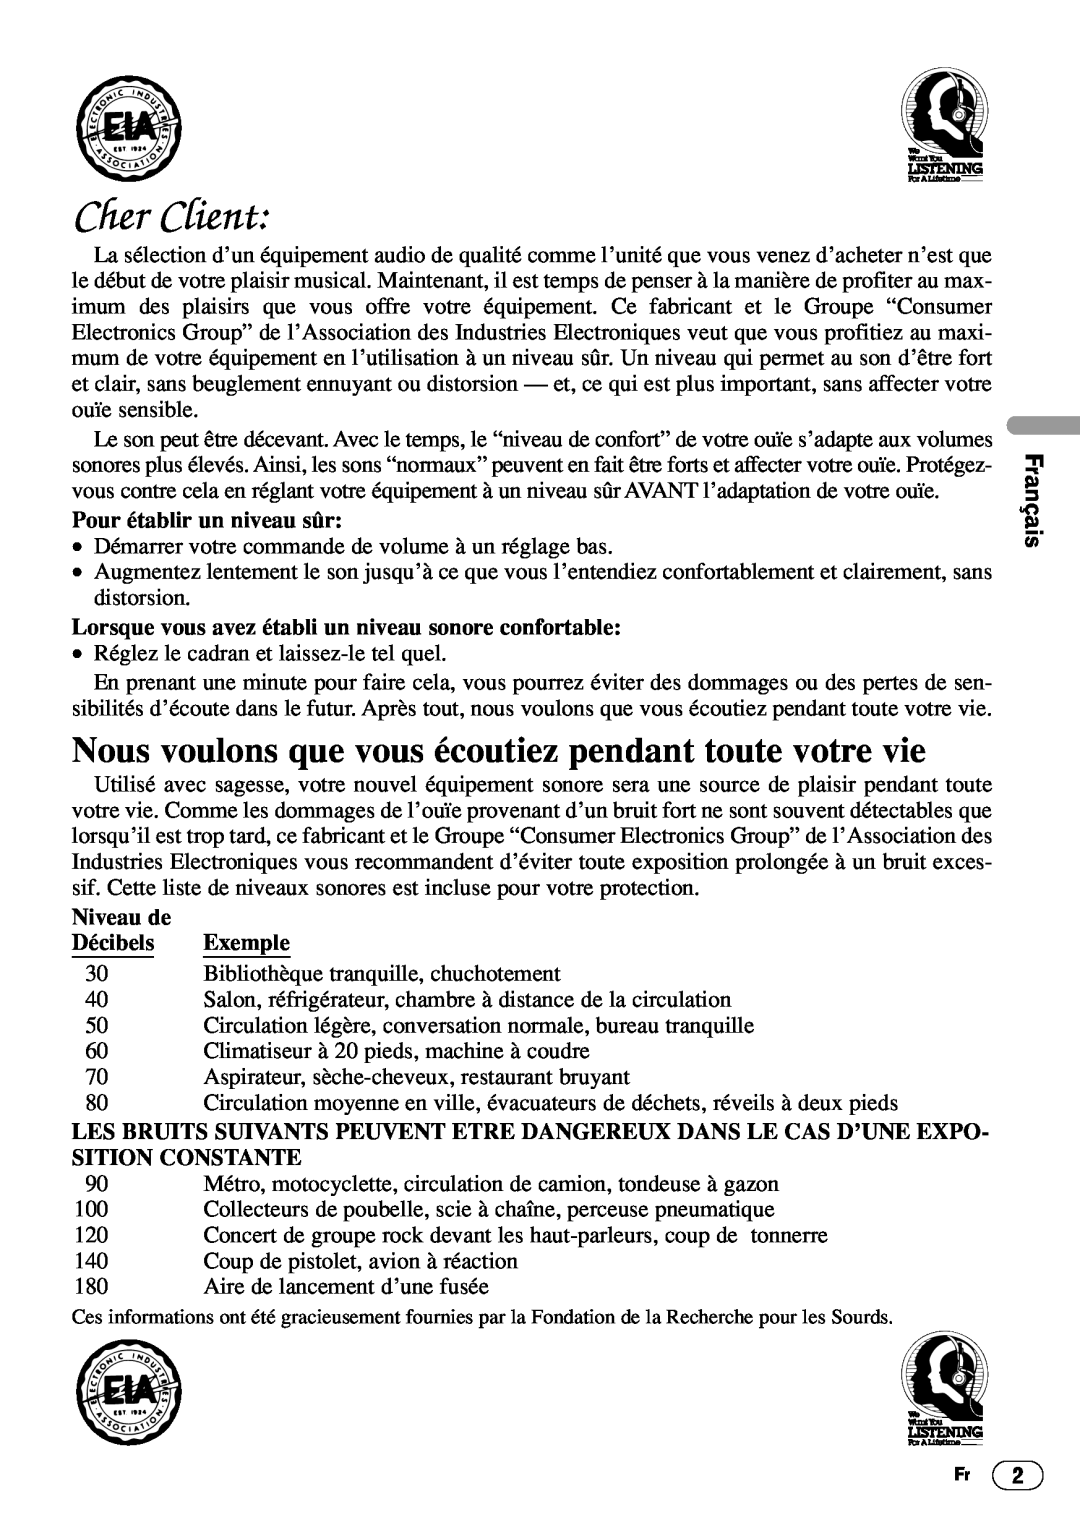 Pioneer DEH-1400 English Français Deutsch Français Italiano, Pour établir un niveau sûr, Niveau de, Décibels, Exemple 